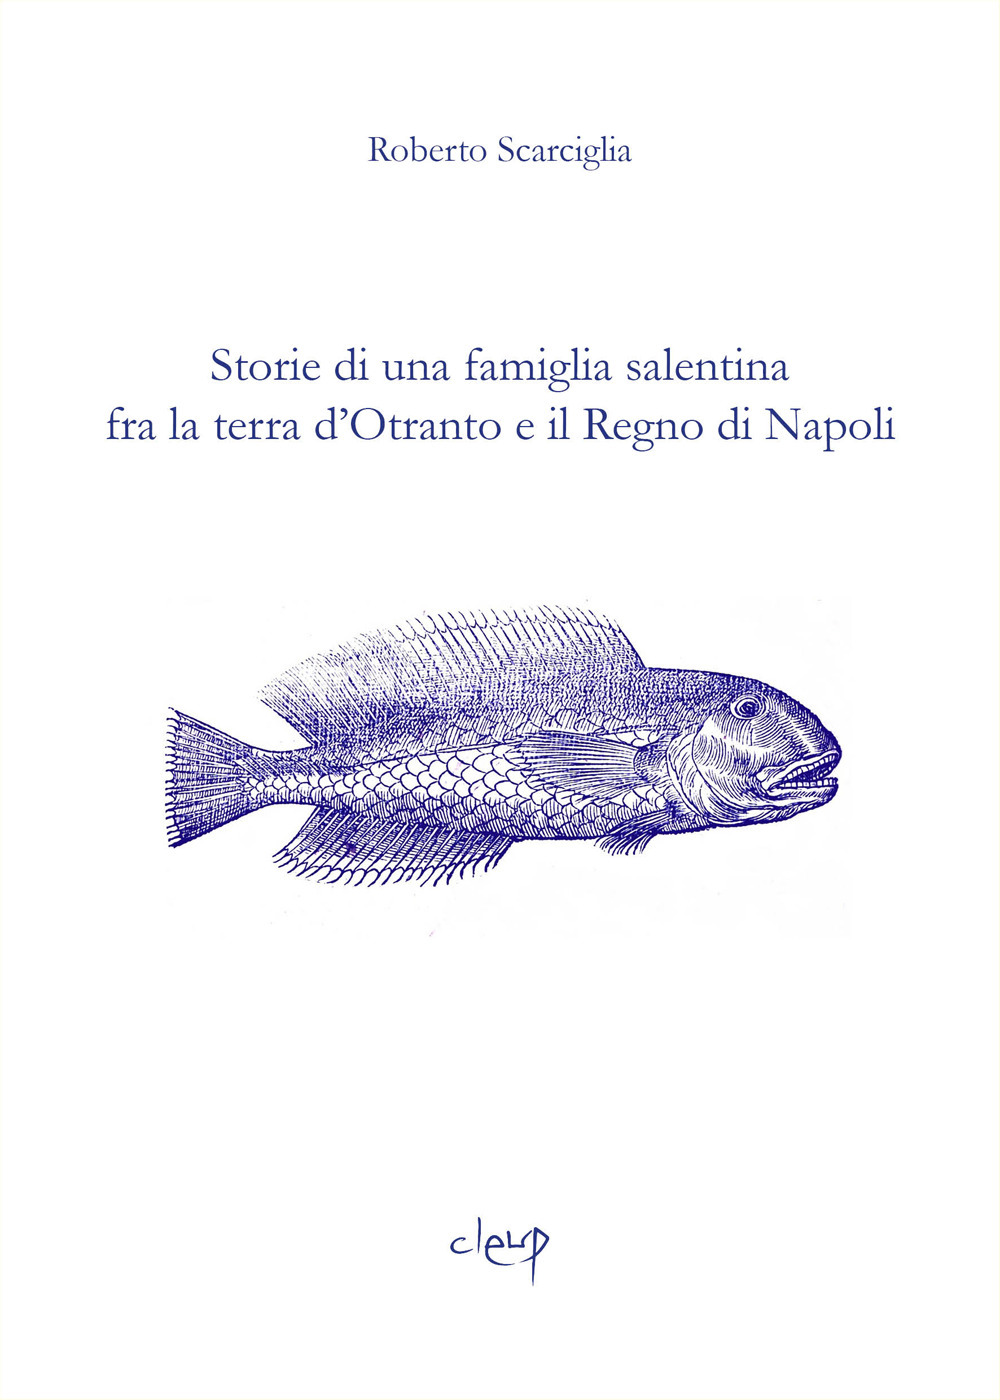 Storie di una famiglia salentina fra la terra d'Otranto e il Regno di Napoli